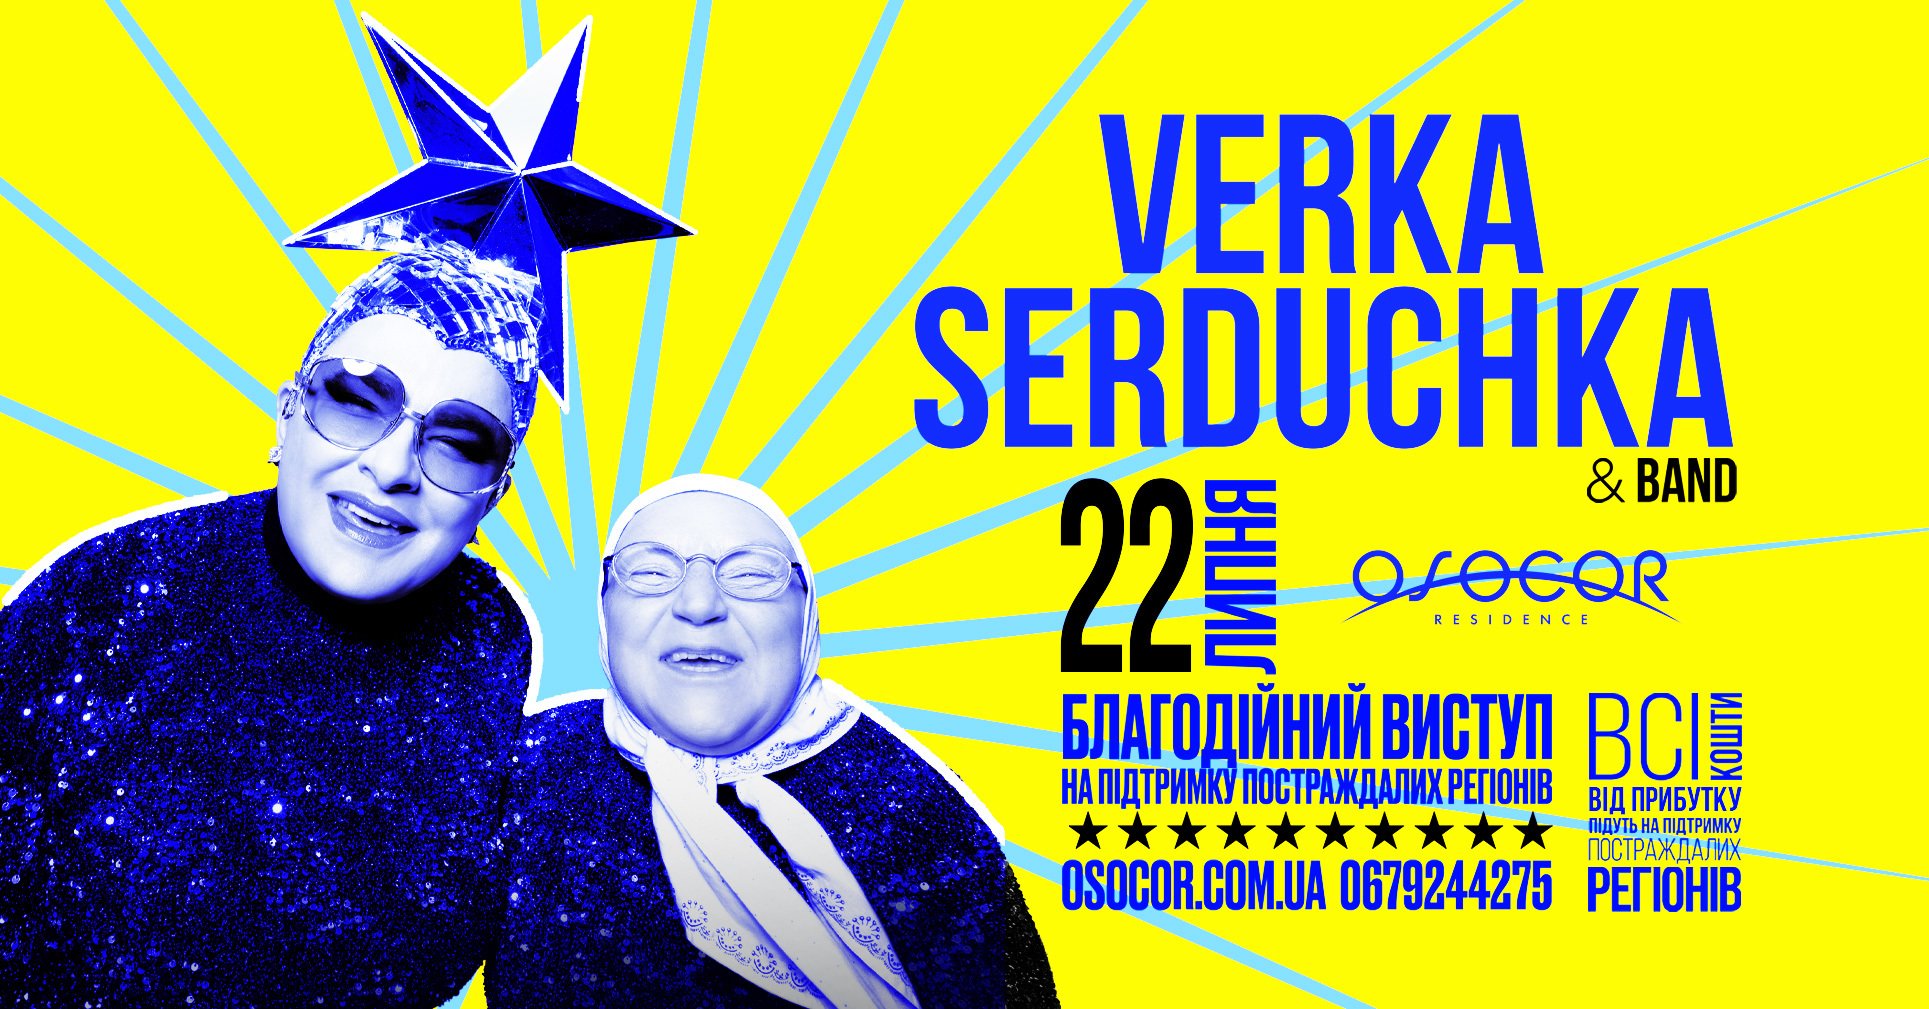 Большое благотворительное выступление Verka Serduchka